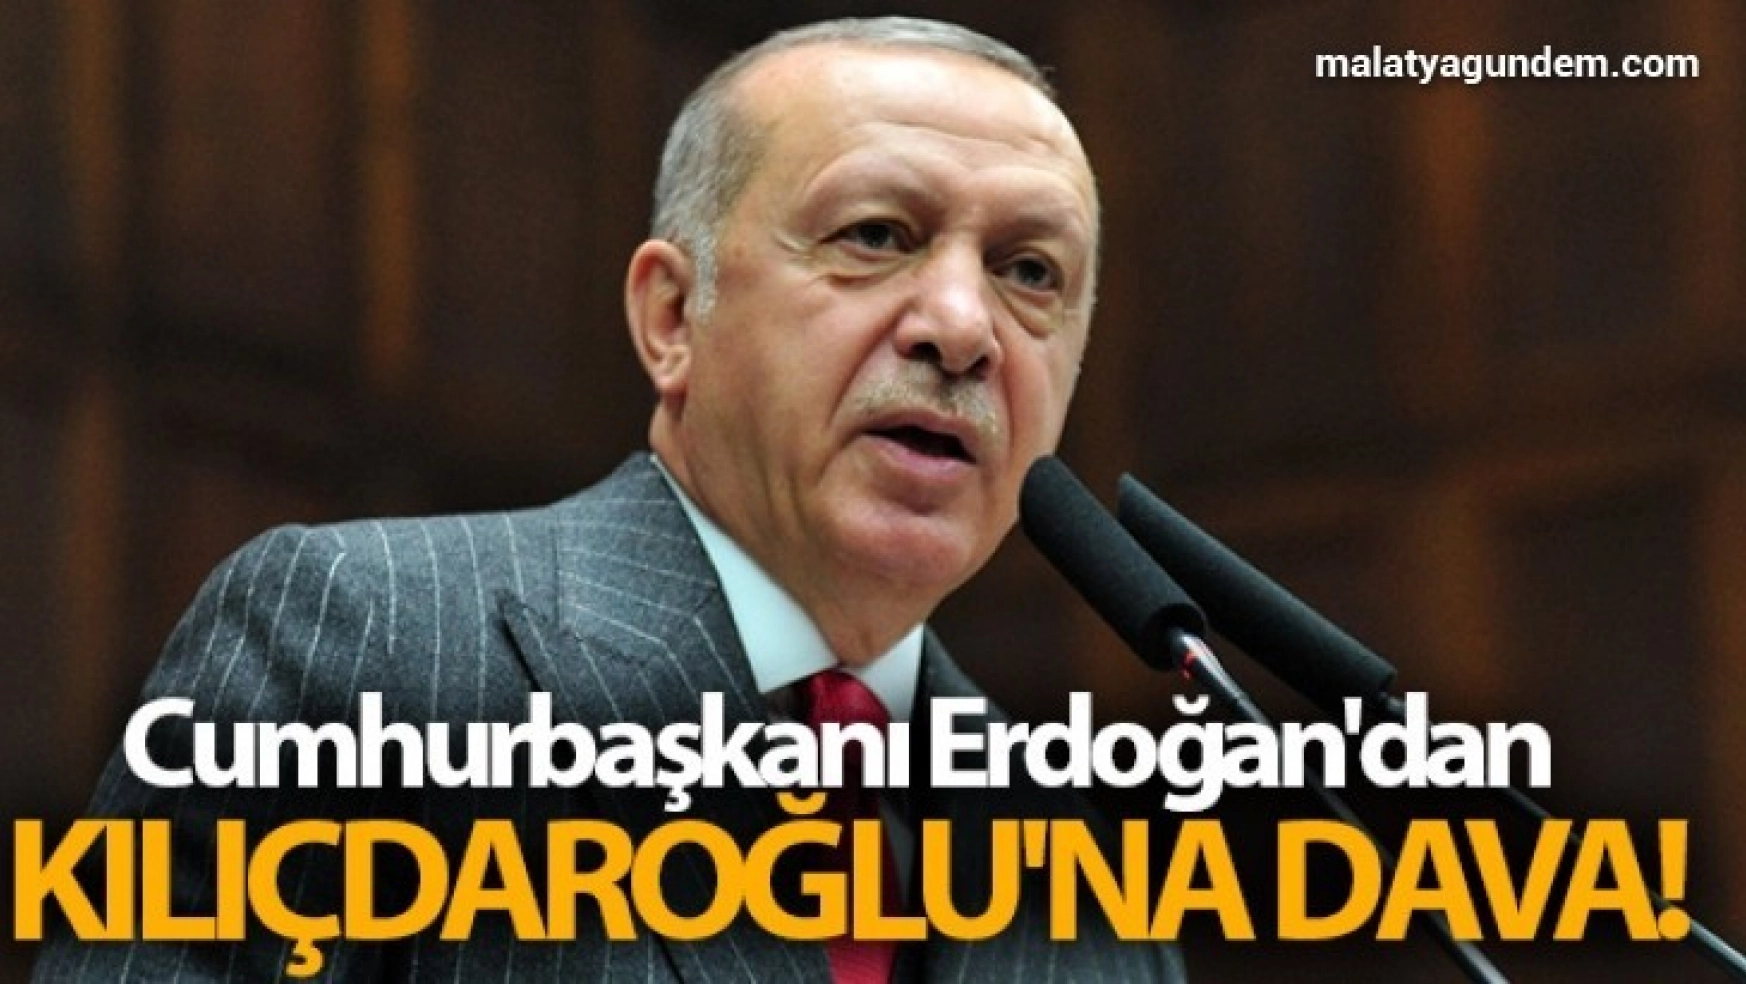 Cumhurbaşkanı Erdoğan'dan Kılıçdaroğlu'na dava!